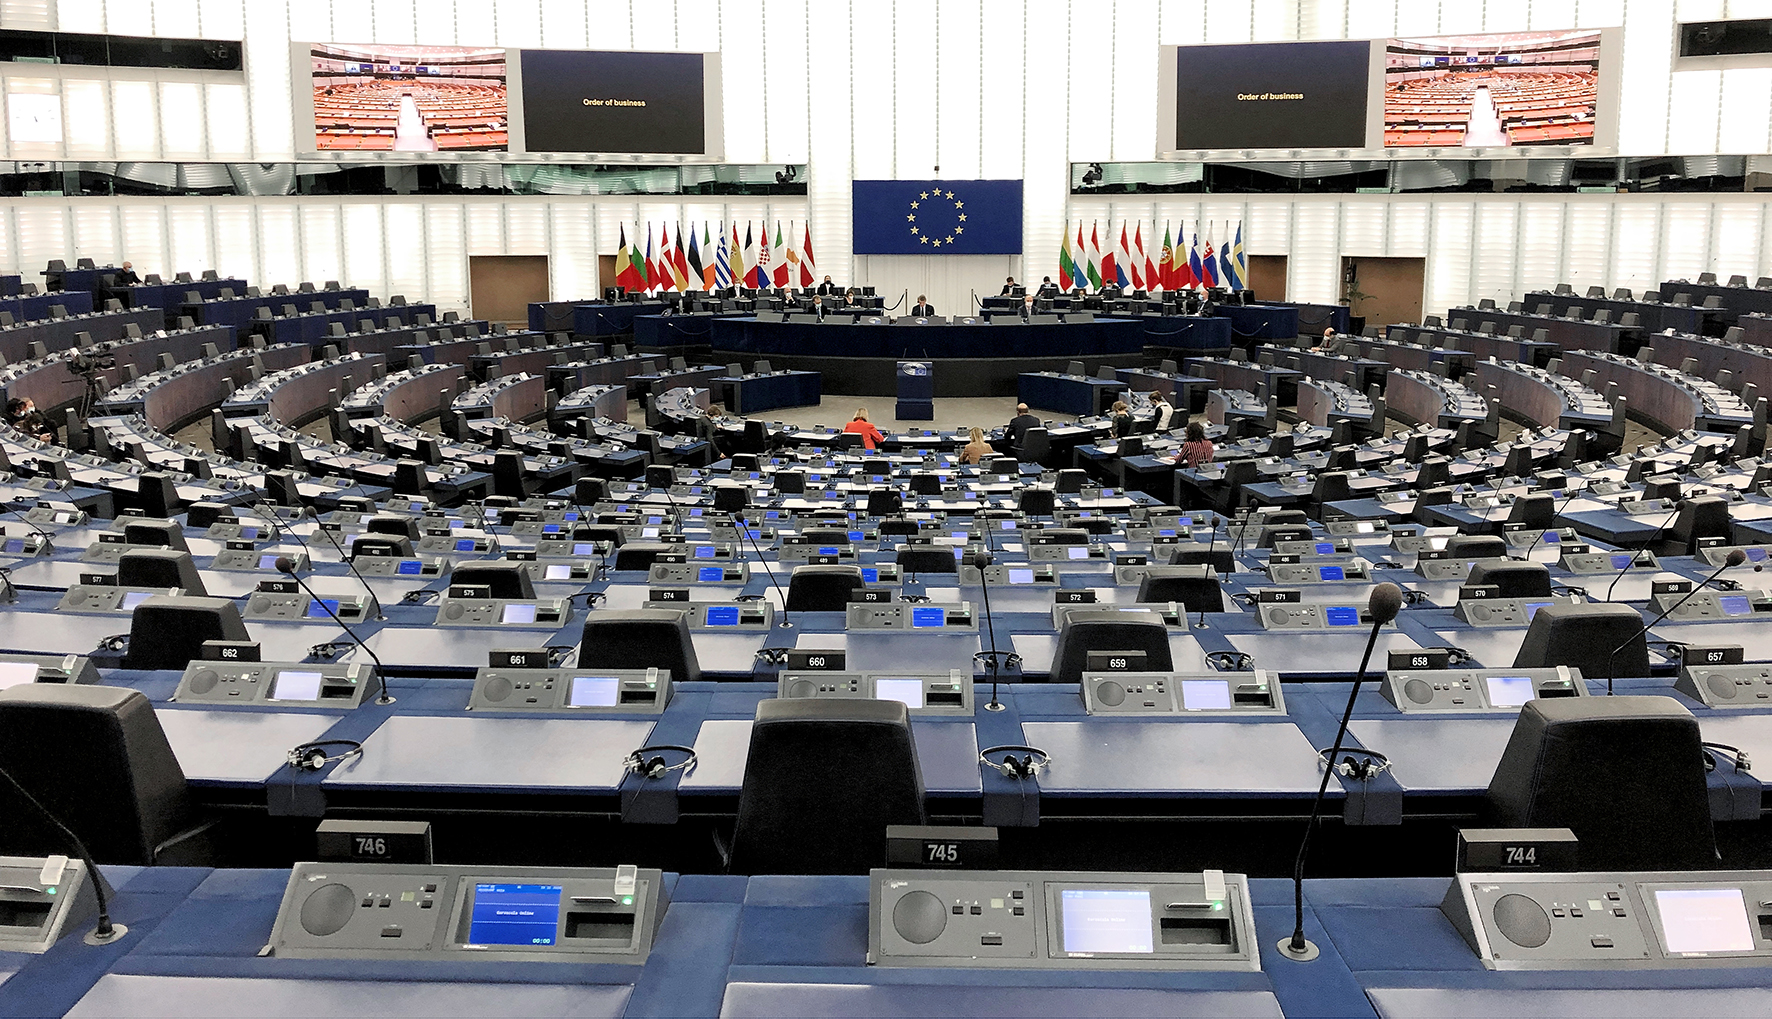 Le Parlement européen a retrouvé Strasbourg, pour quelques heures